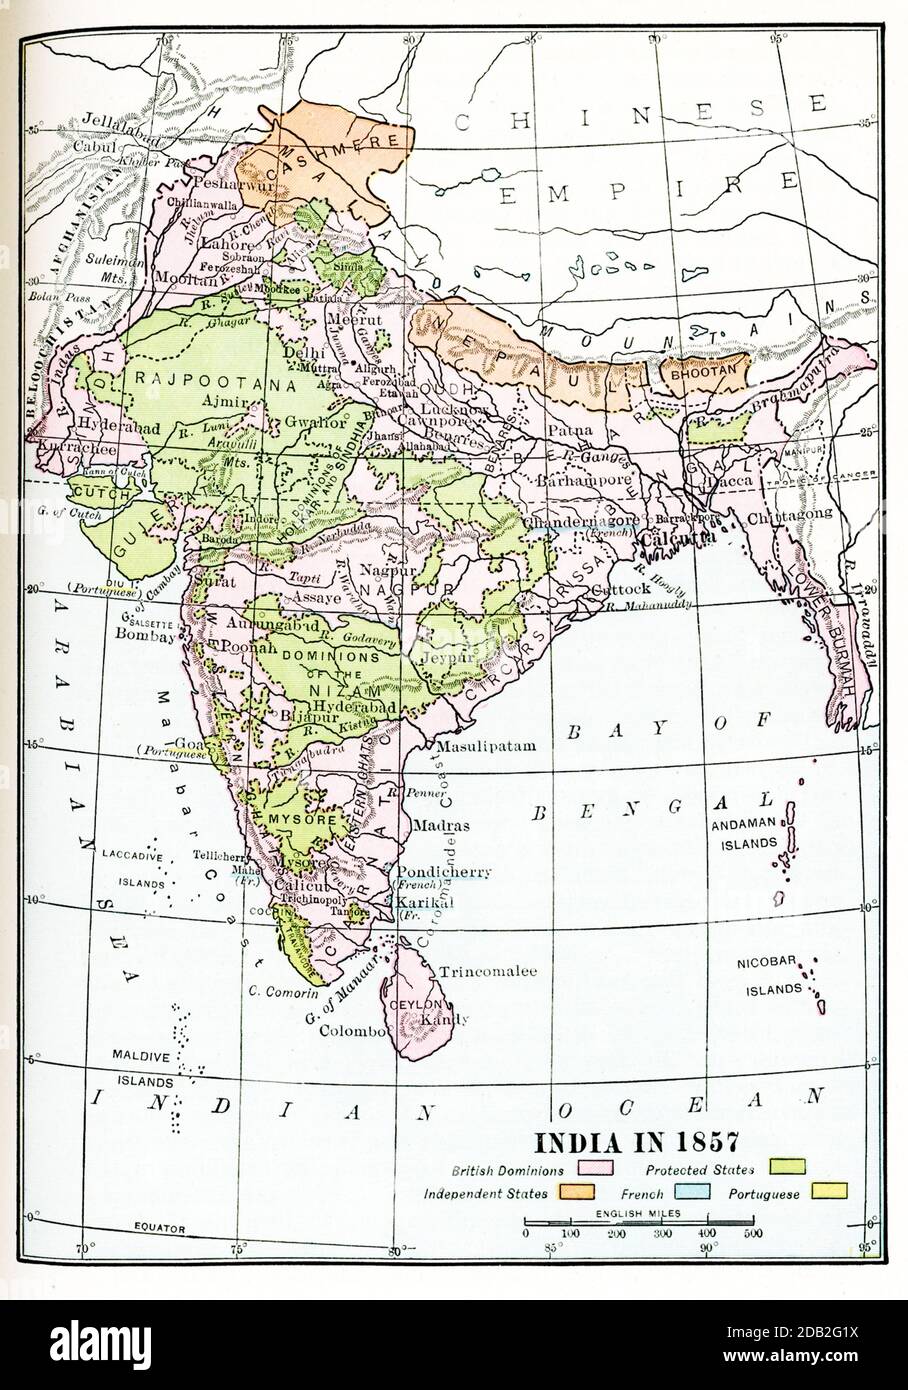 Indien im Jahr 1857. Britische Herrschaften sind in rosa. Geschützte Zustände in Gelb. Unabhängige Staaten in orange. Französisch in Blau, Portugiesisch in Gelb. Stockfoto